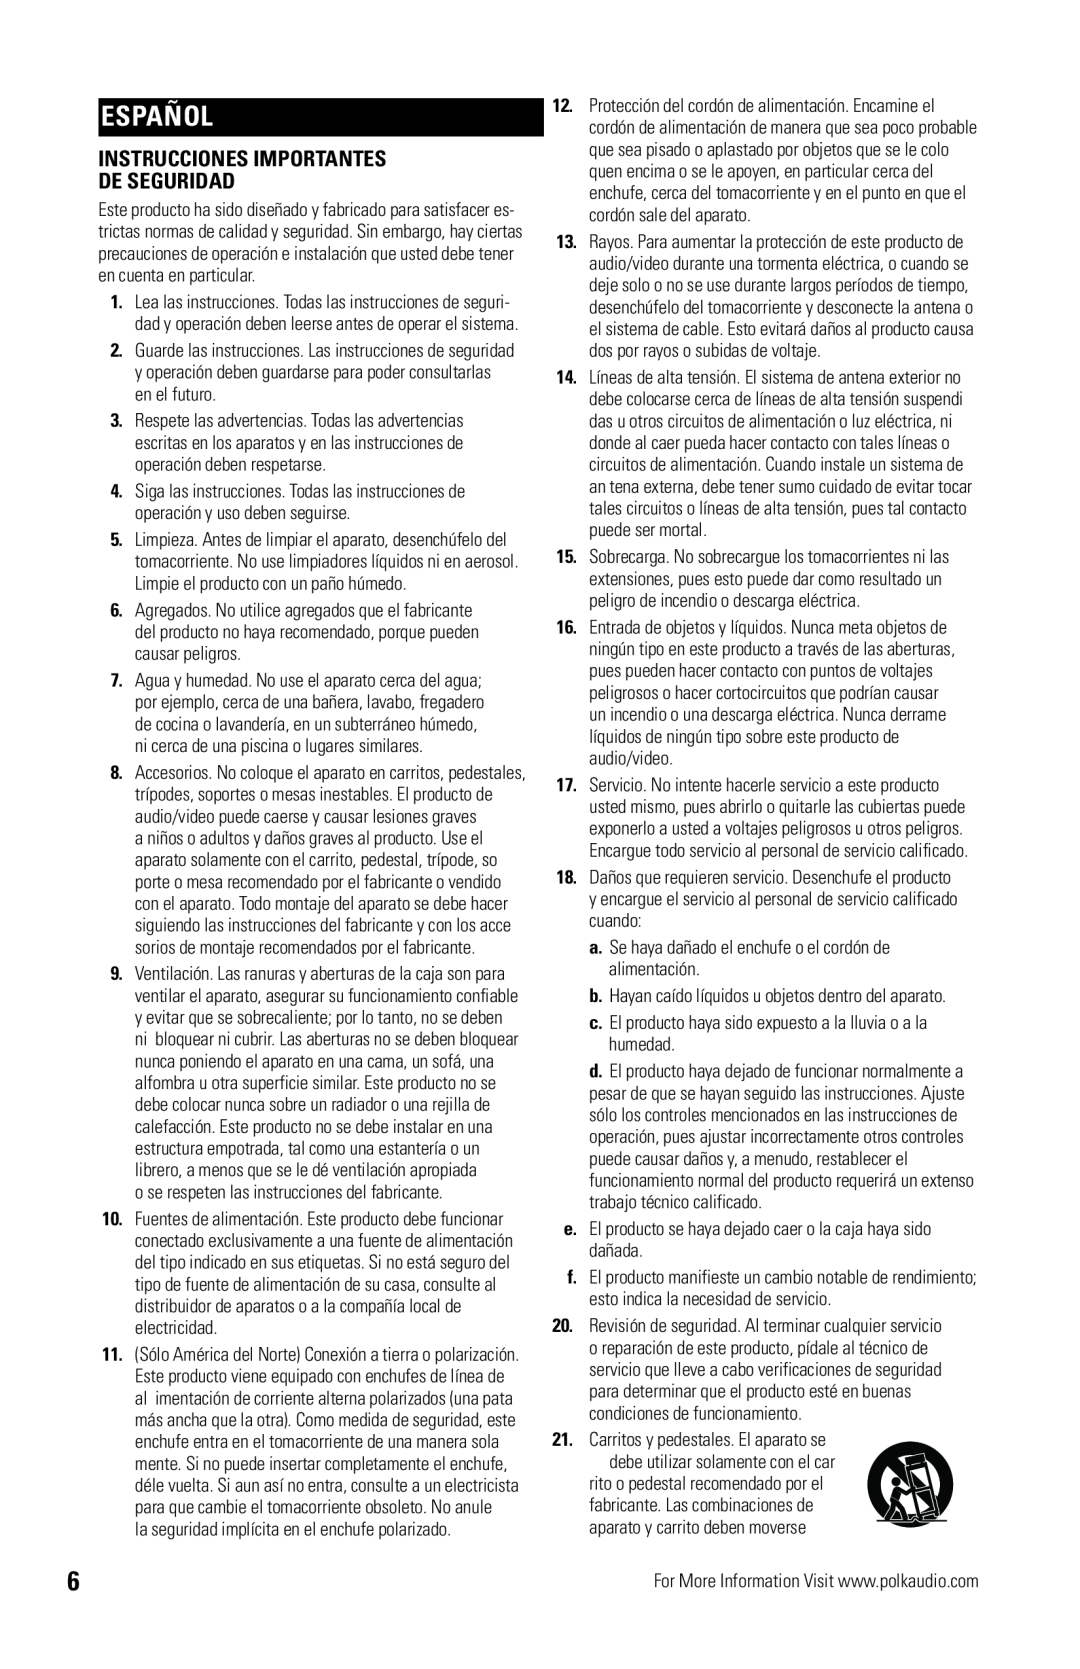 Polk Audio OWM3 owner manual Español, Instrucciones Importantes De Seguridad 